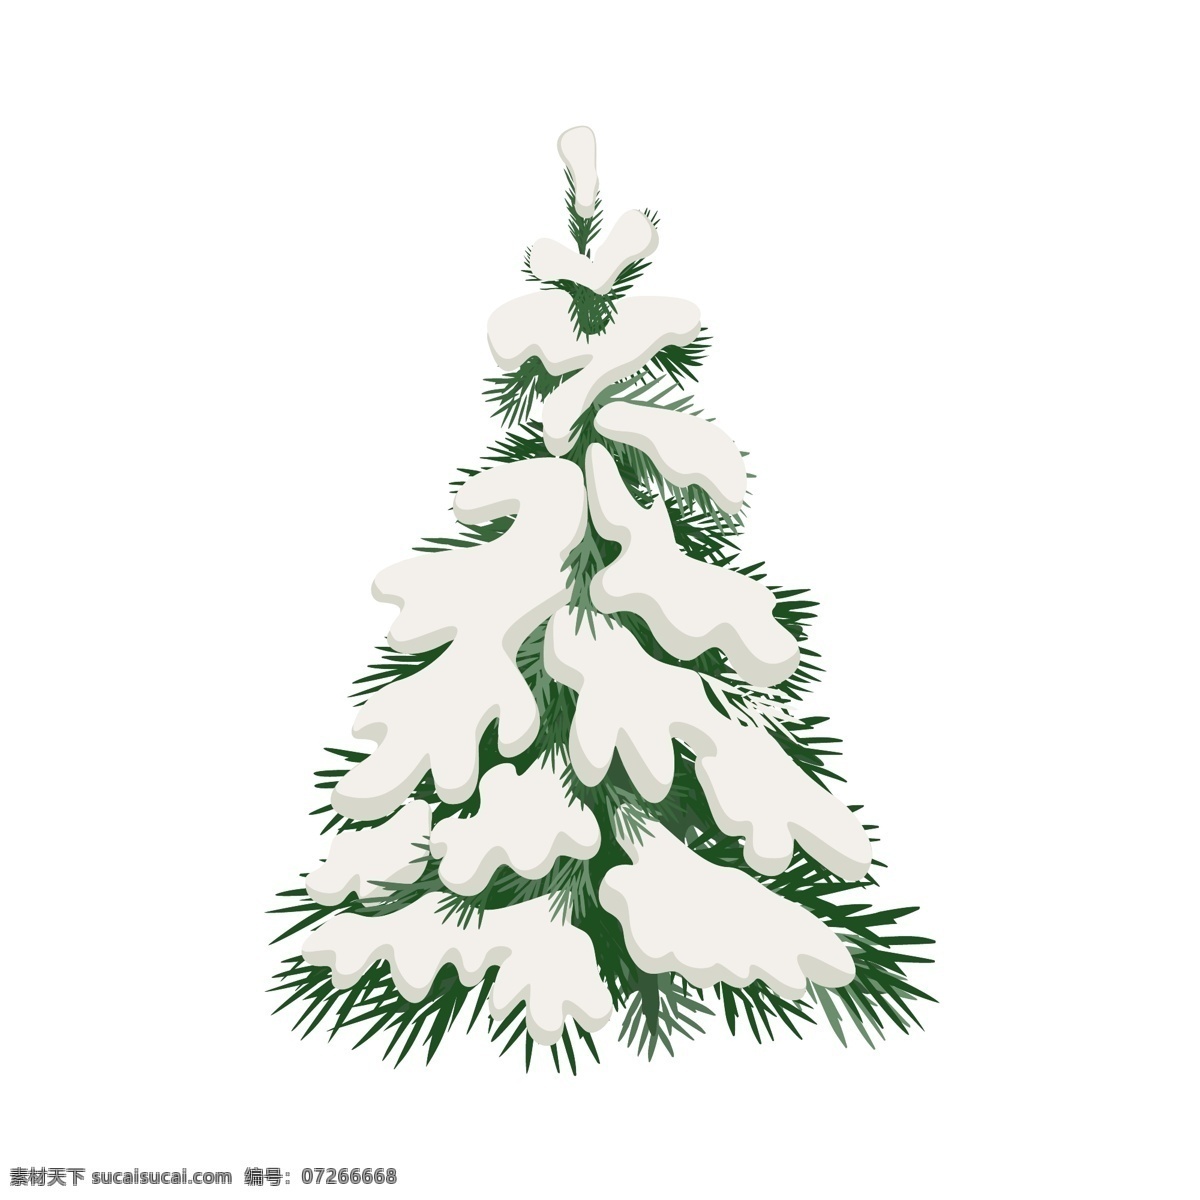 雪松 雪 树 圣诞树 矢量 商用 元素 冬天 圣诞节 雪树 扁平 松树